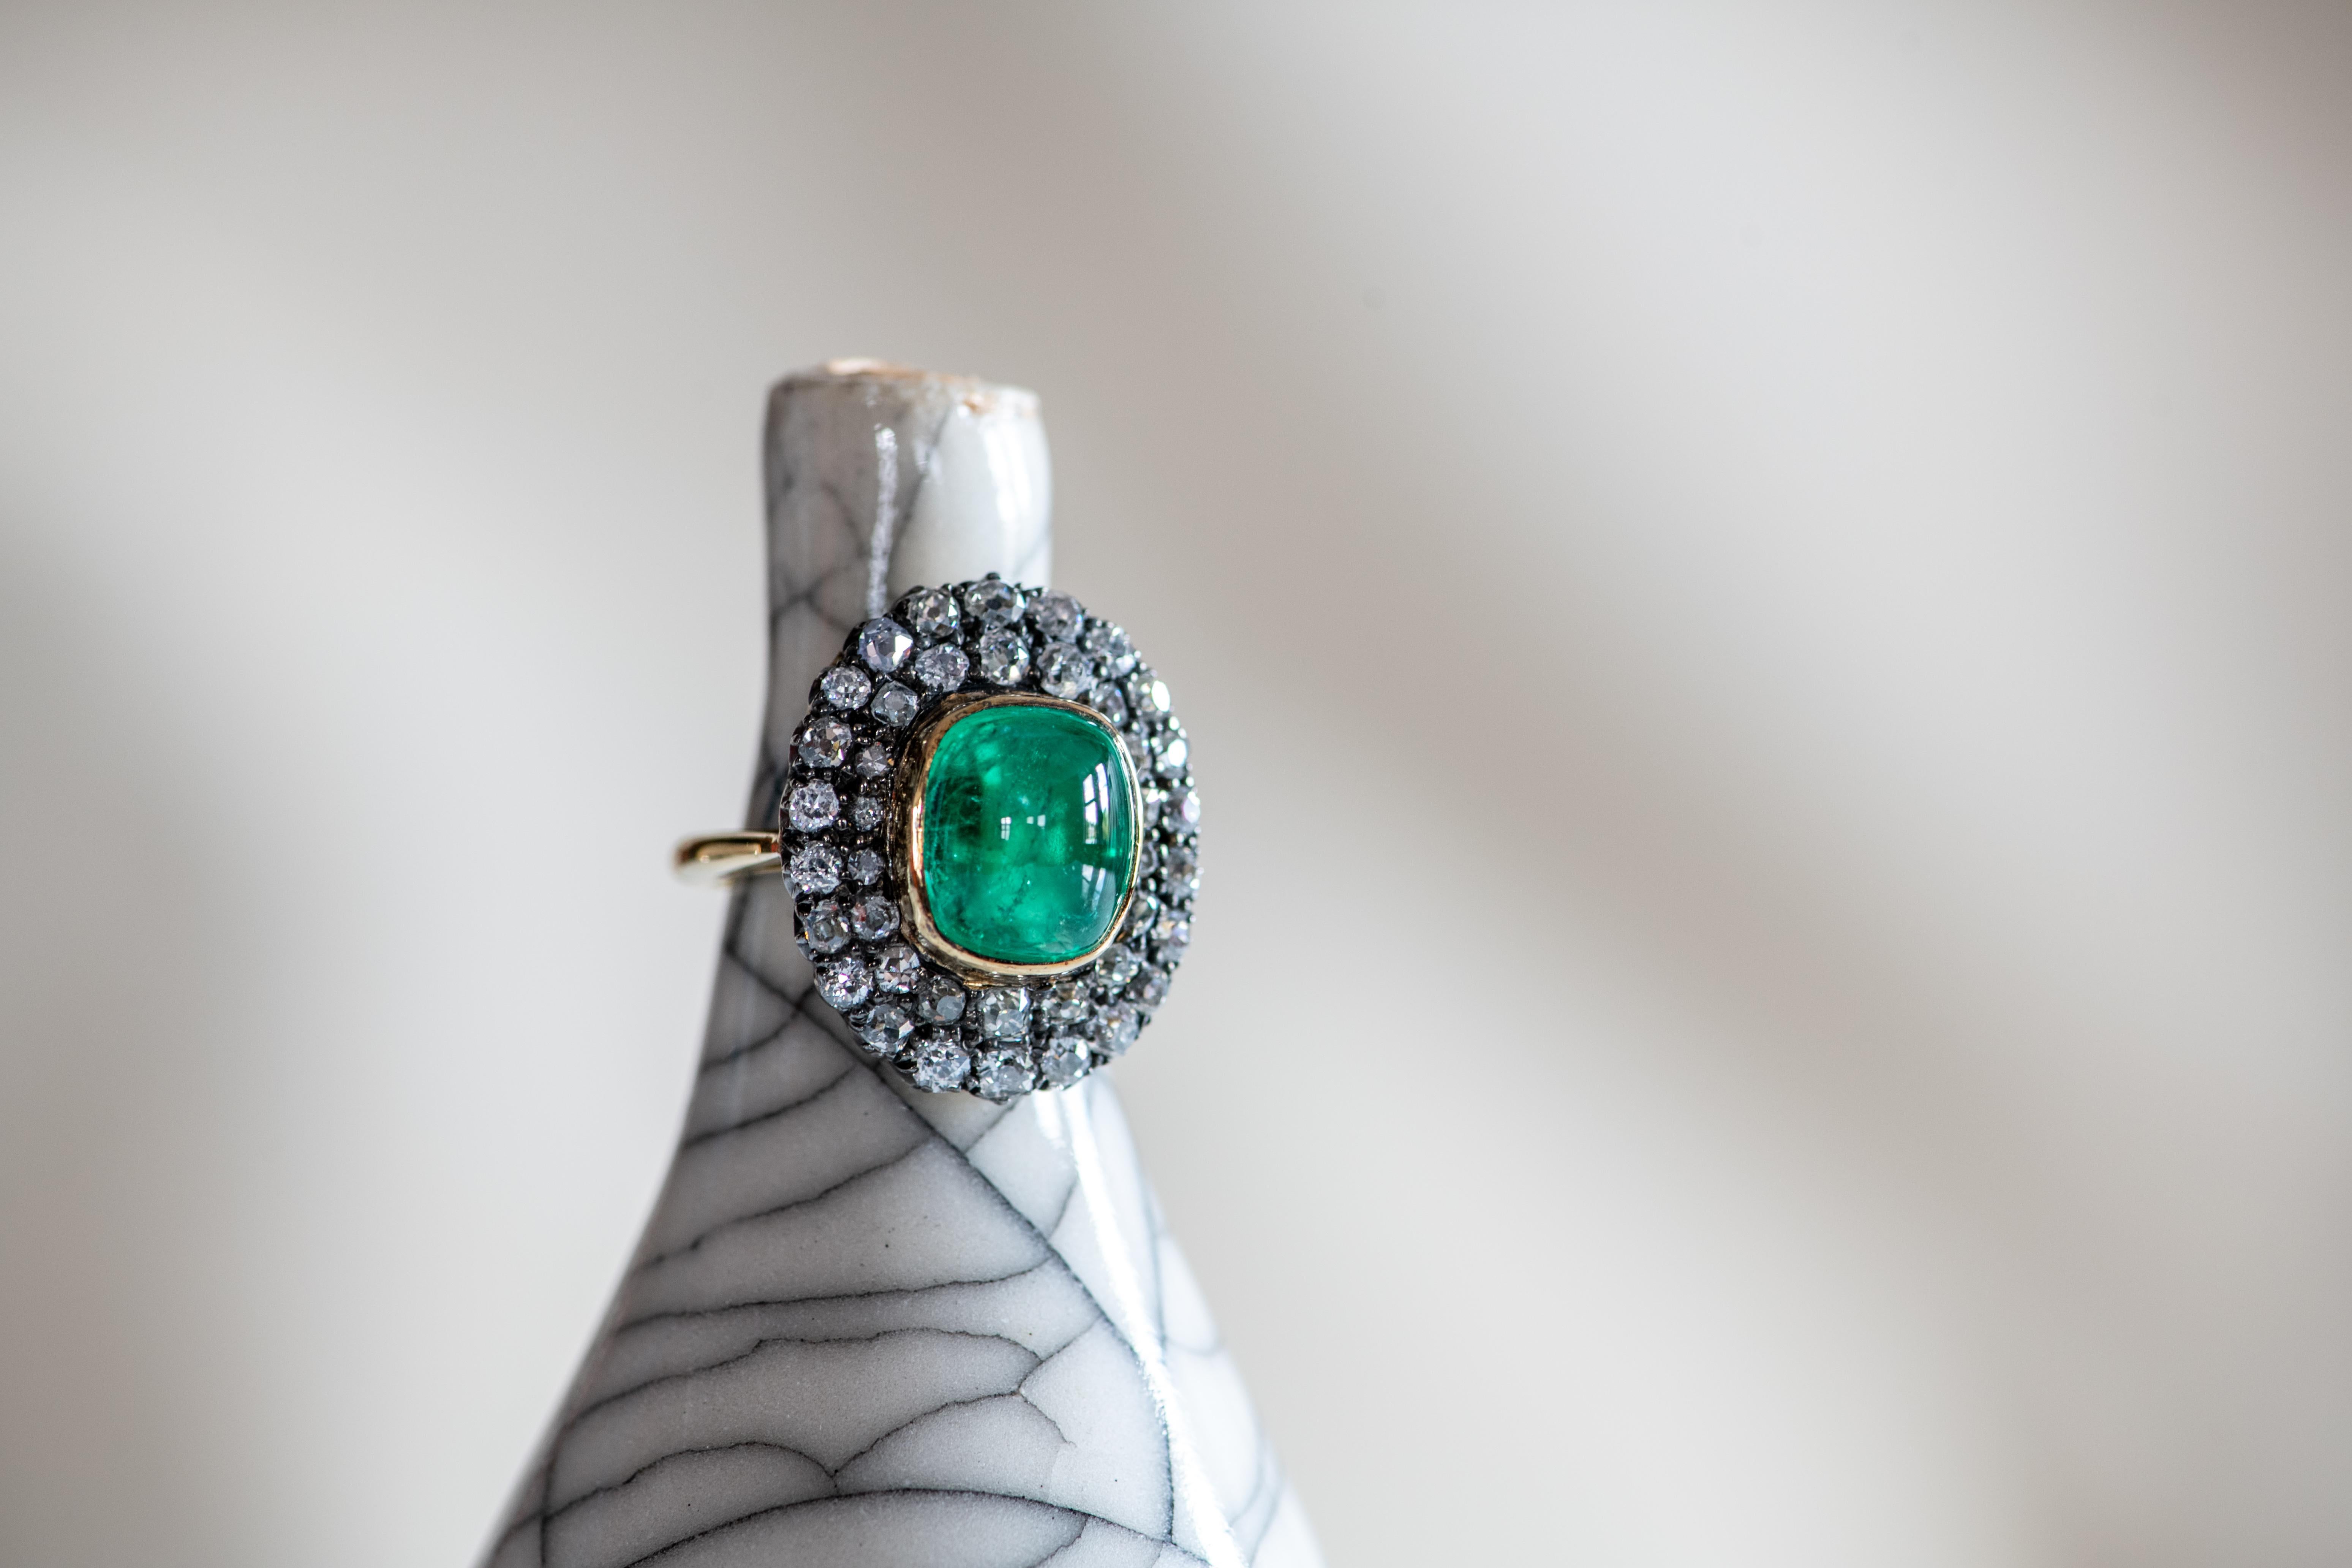 Der große Cabochon-Smaragd in der Mitte dieses Rings im Vintage-Stil ist kühn und leuchtend. Seine lebendige grüne Farbe wird durch eine doppelschichtige Einfassung aus runden weißen Brillanten akzentuiert. Dieser in der Haruni-Werkstatt